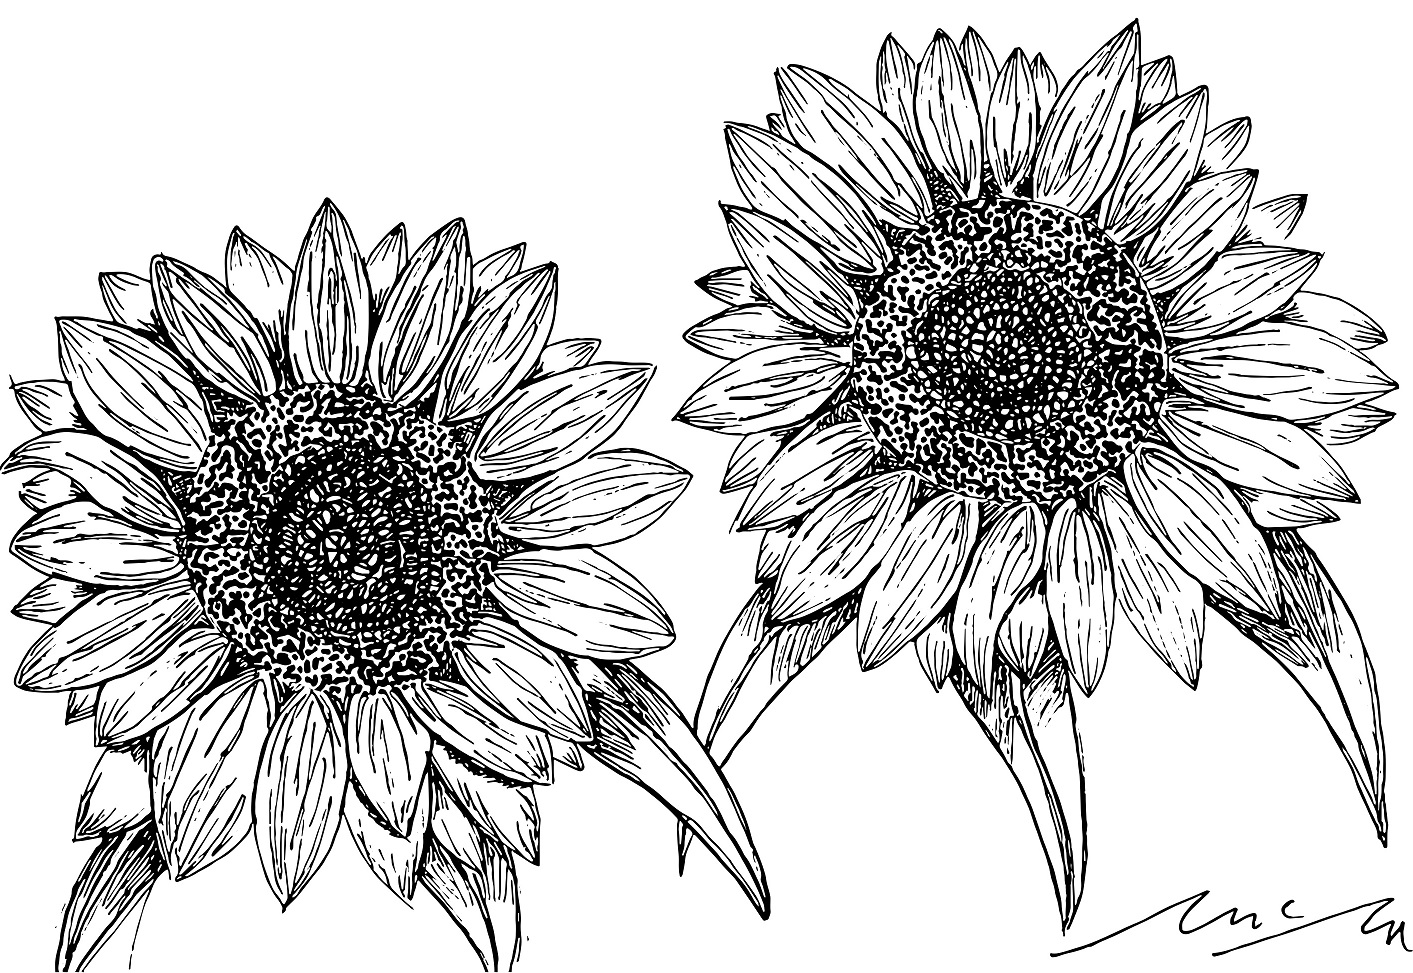 OG Sunflowers